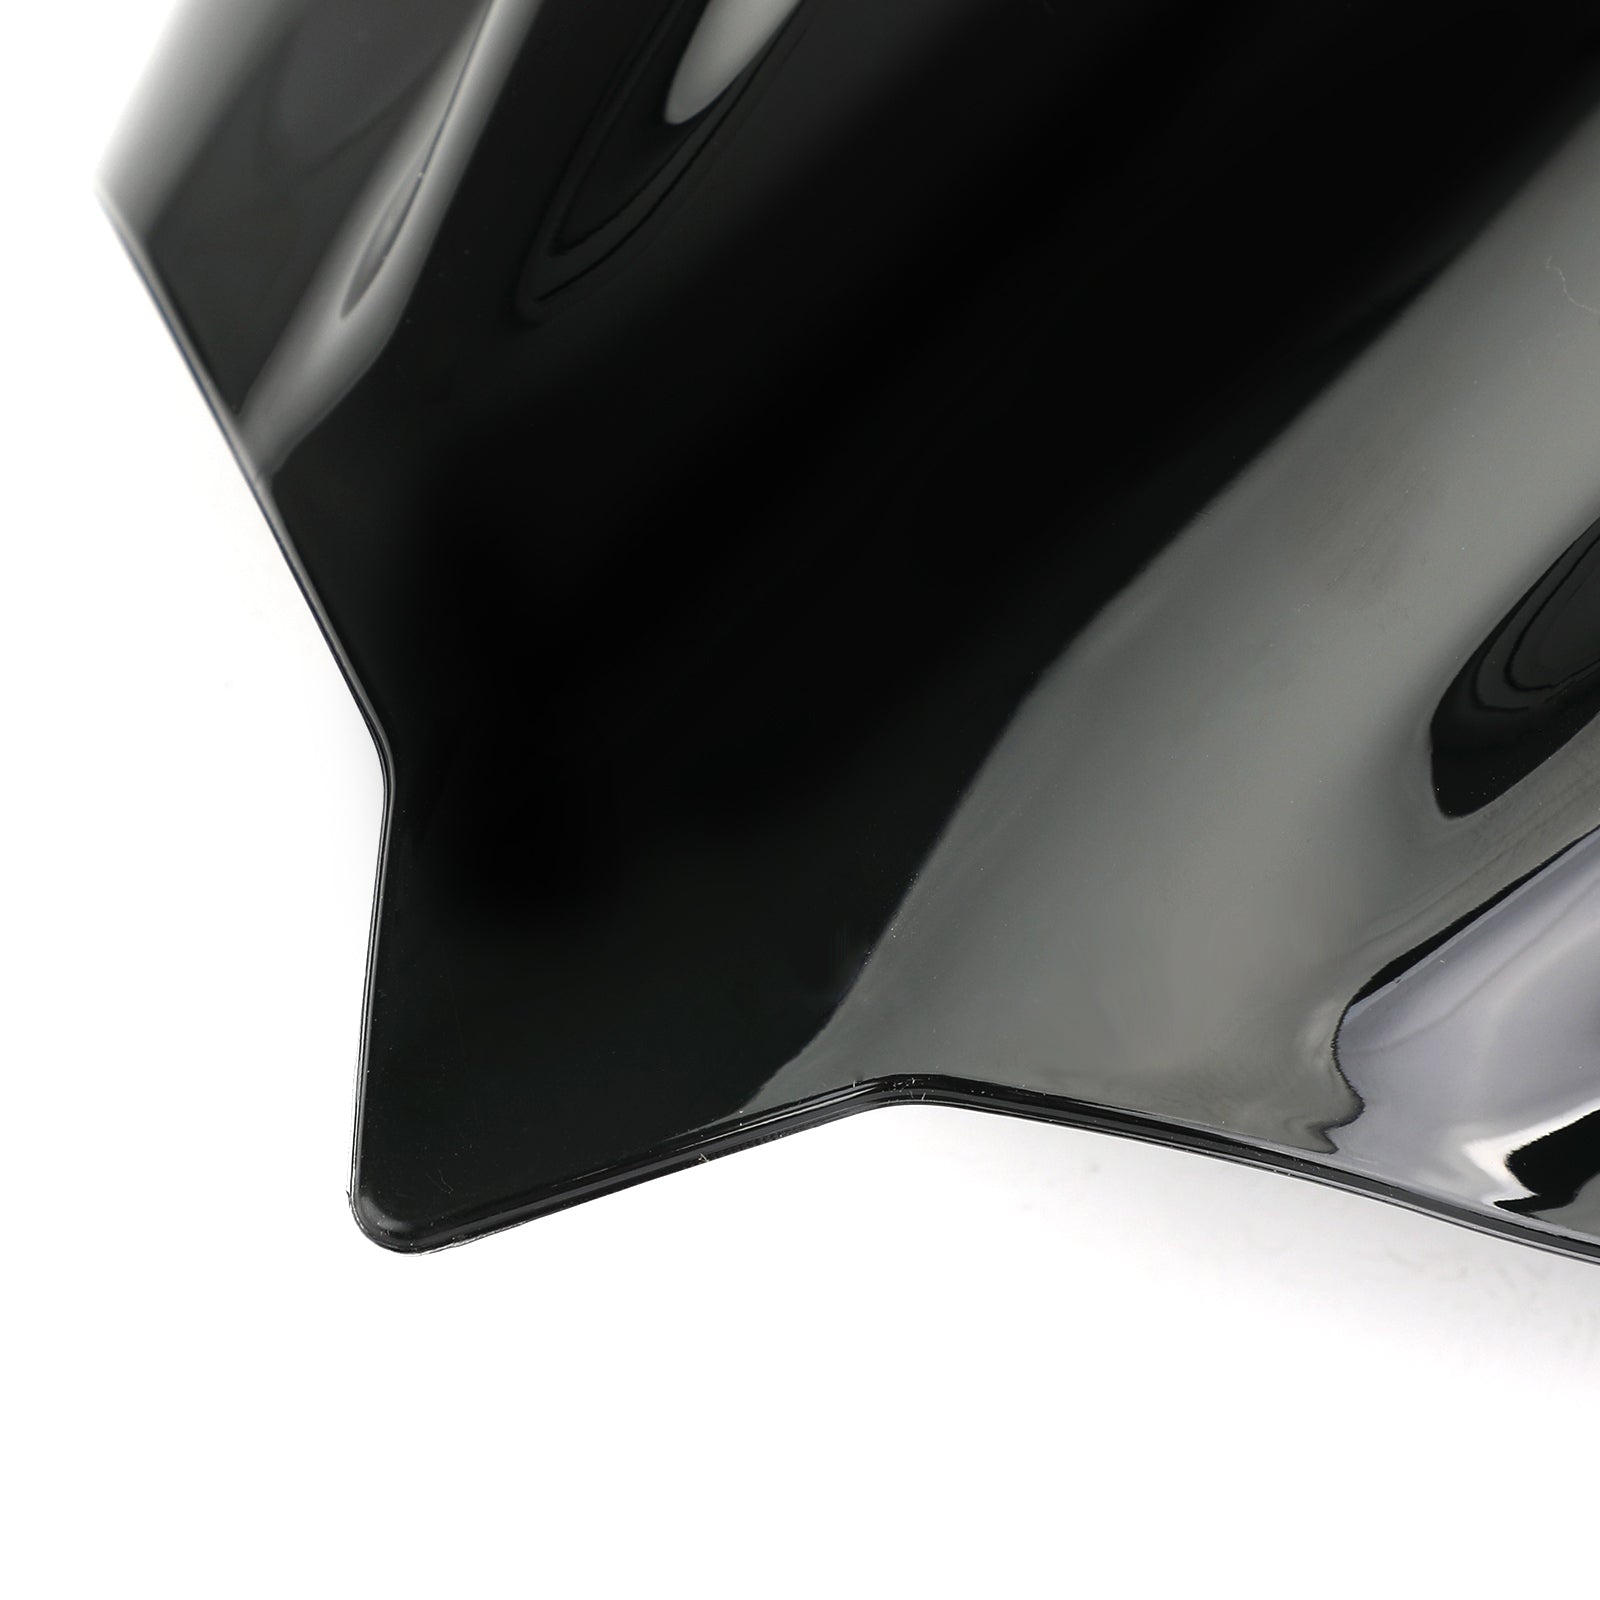 Parabrezza per parabrezza moto ABS 4mm per Kawasaki Z400 2019-2020 generico